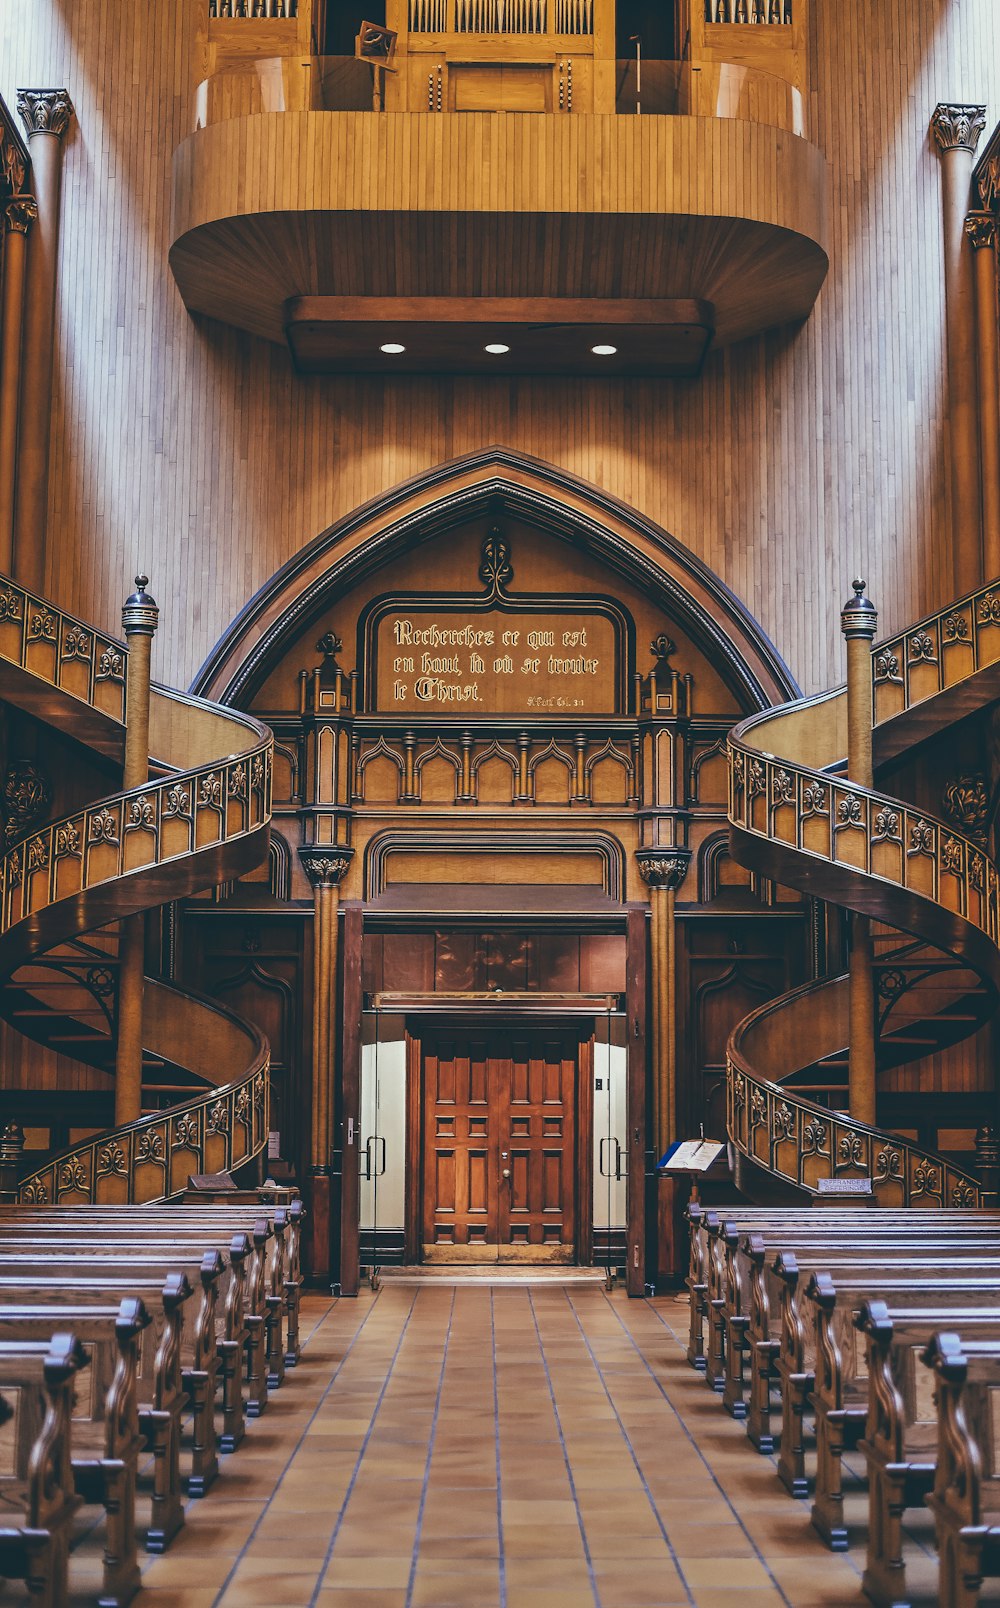 Bancos de madera marrón dentro de la iglesia